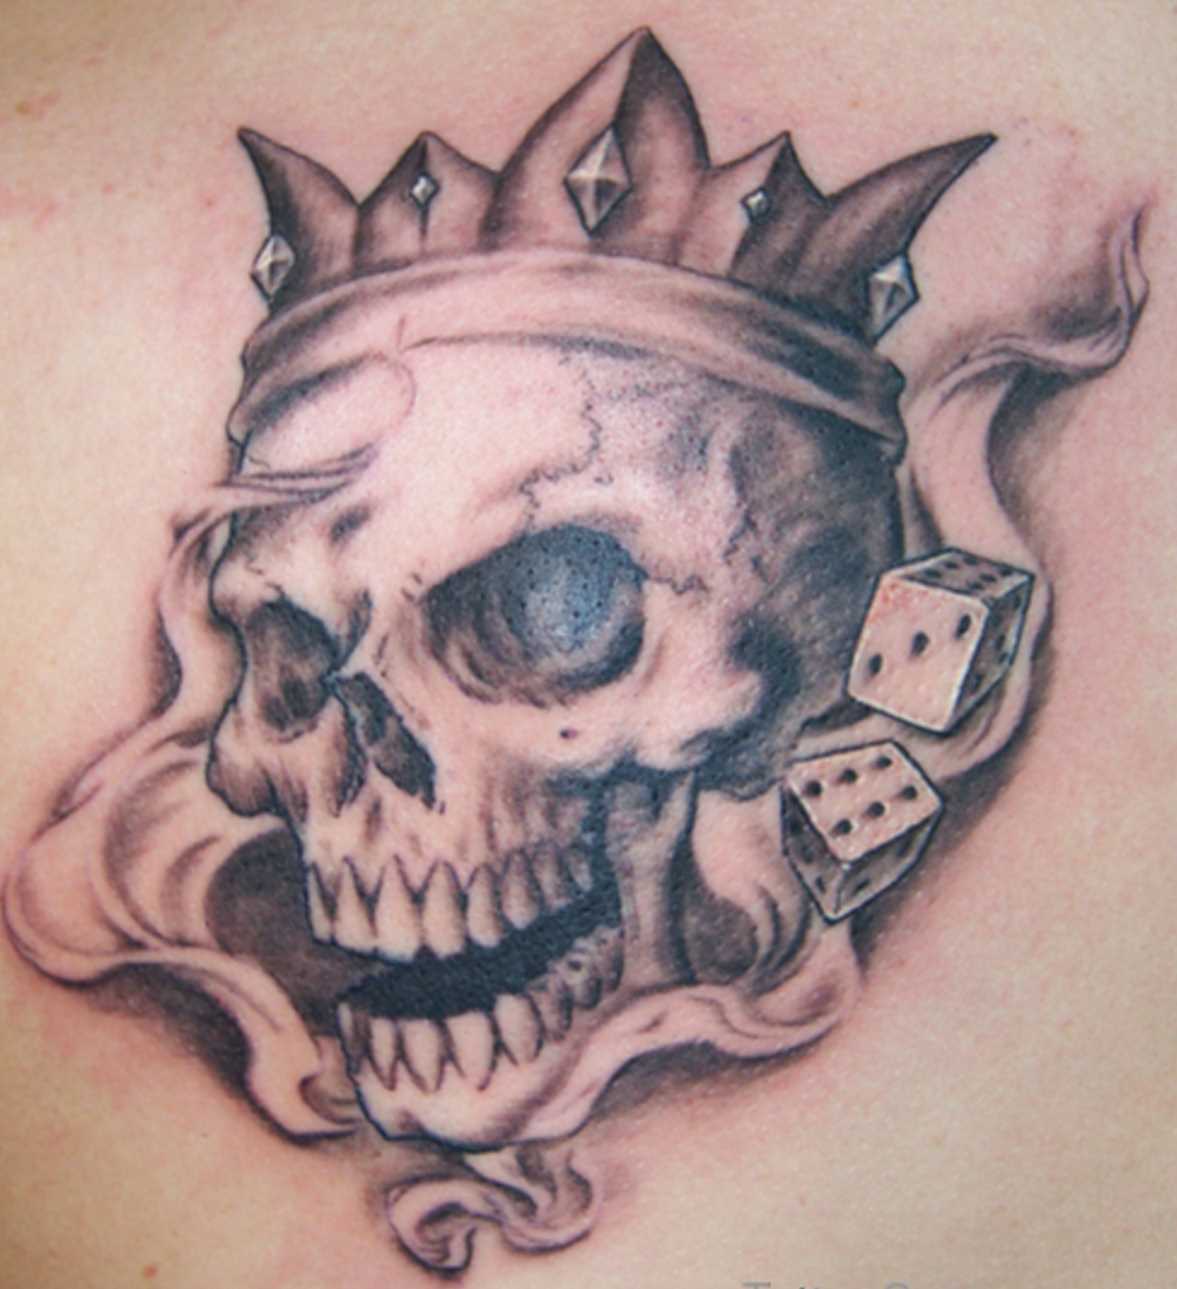 Tatuagem de coroa sobre o crânio com dados ossos no peito do homem